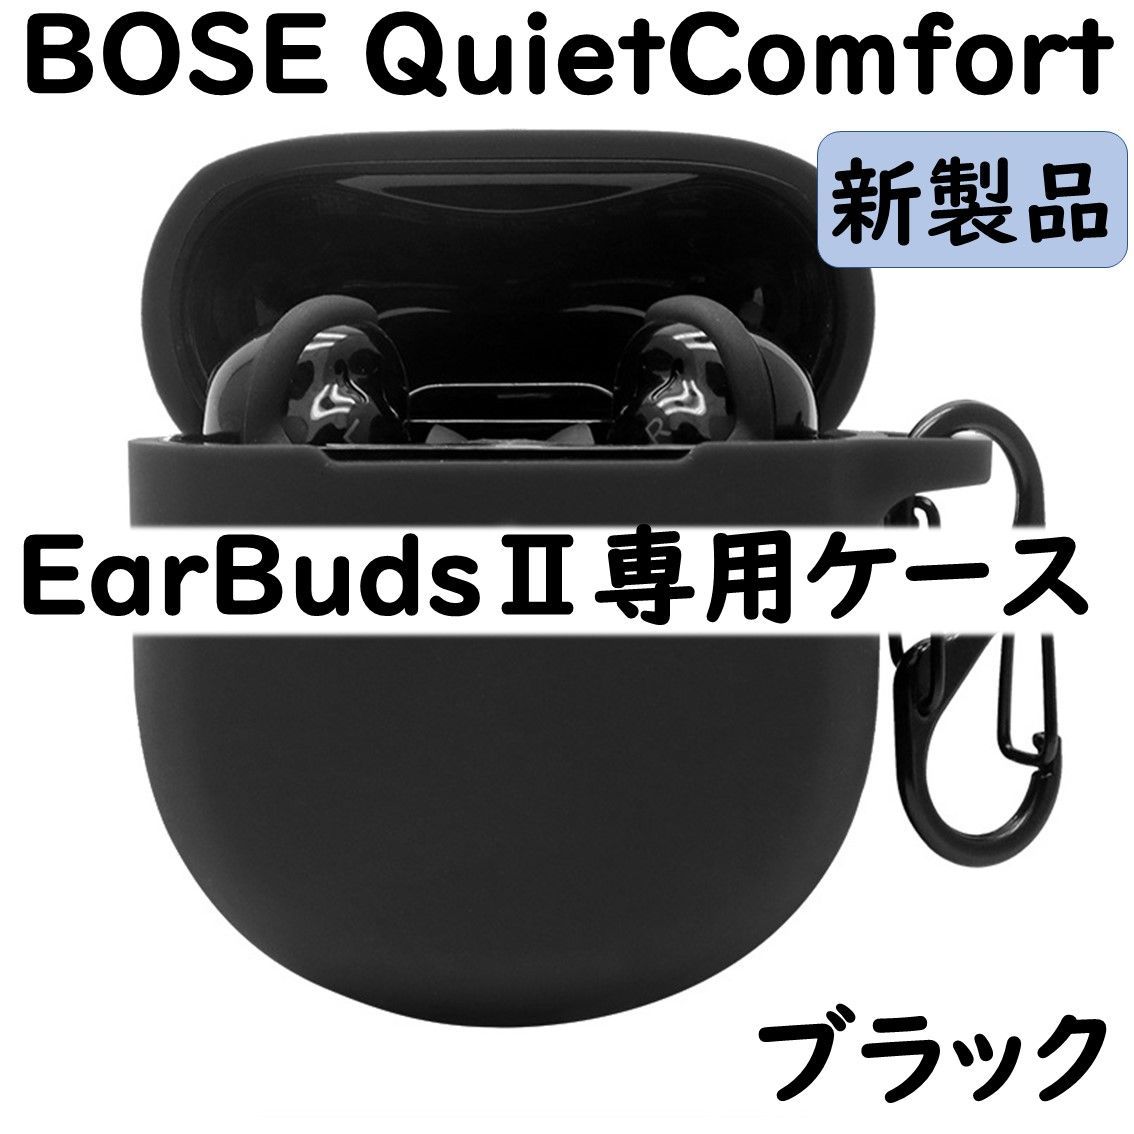 正規品質保証】 BOSE QuietComfort EarBuds 専用ケース ブラック